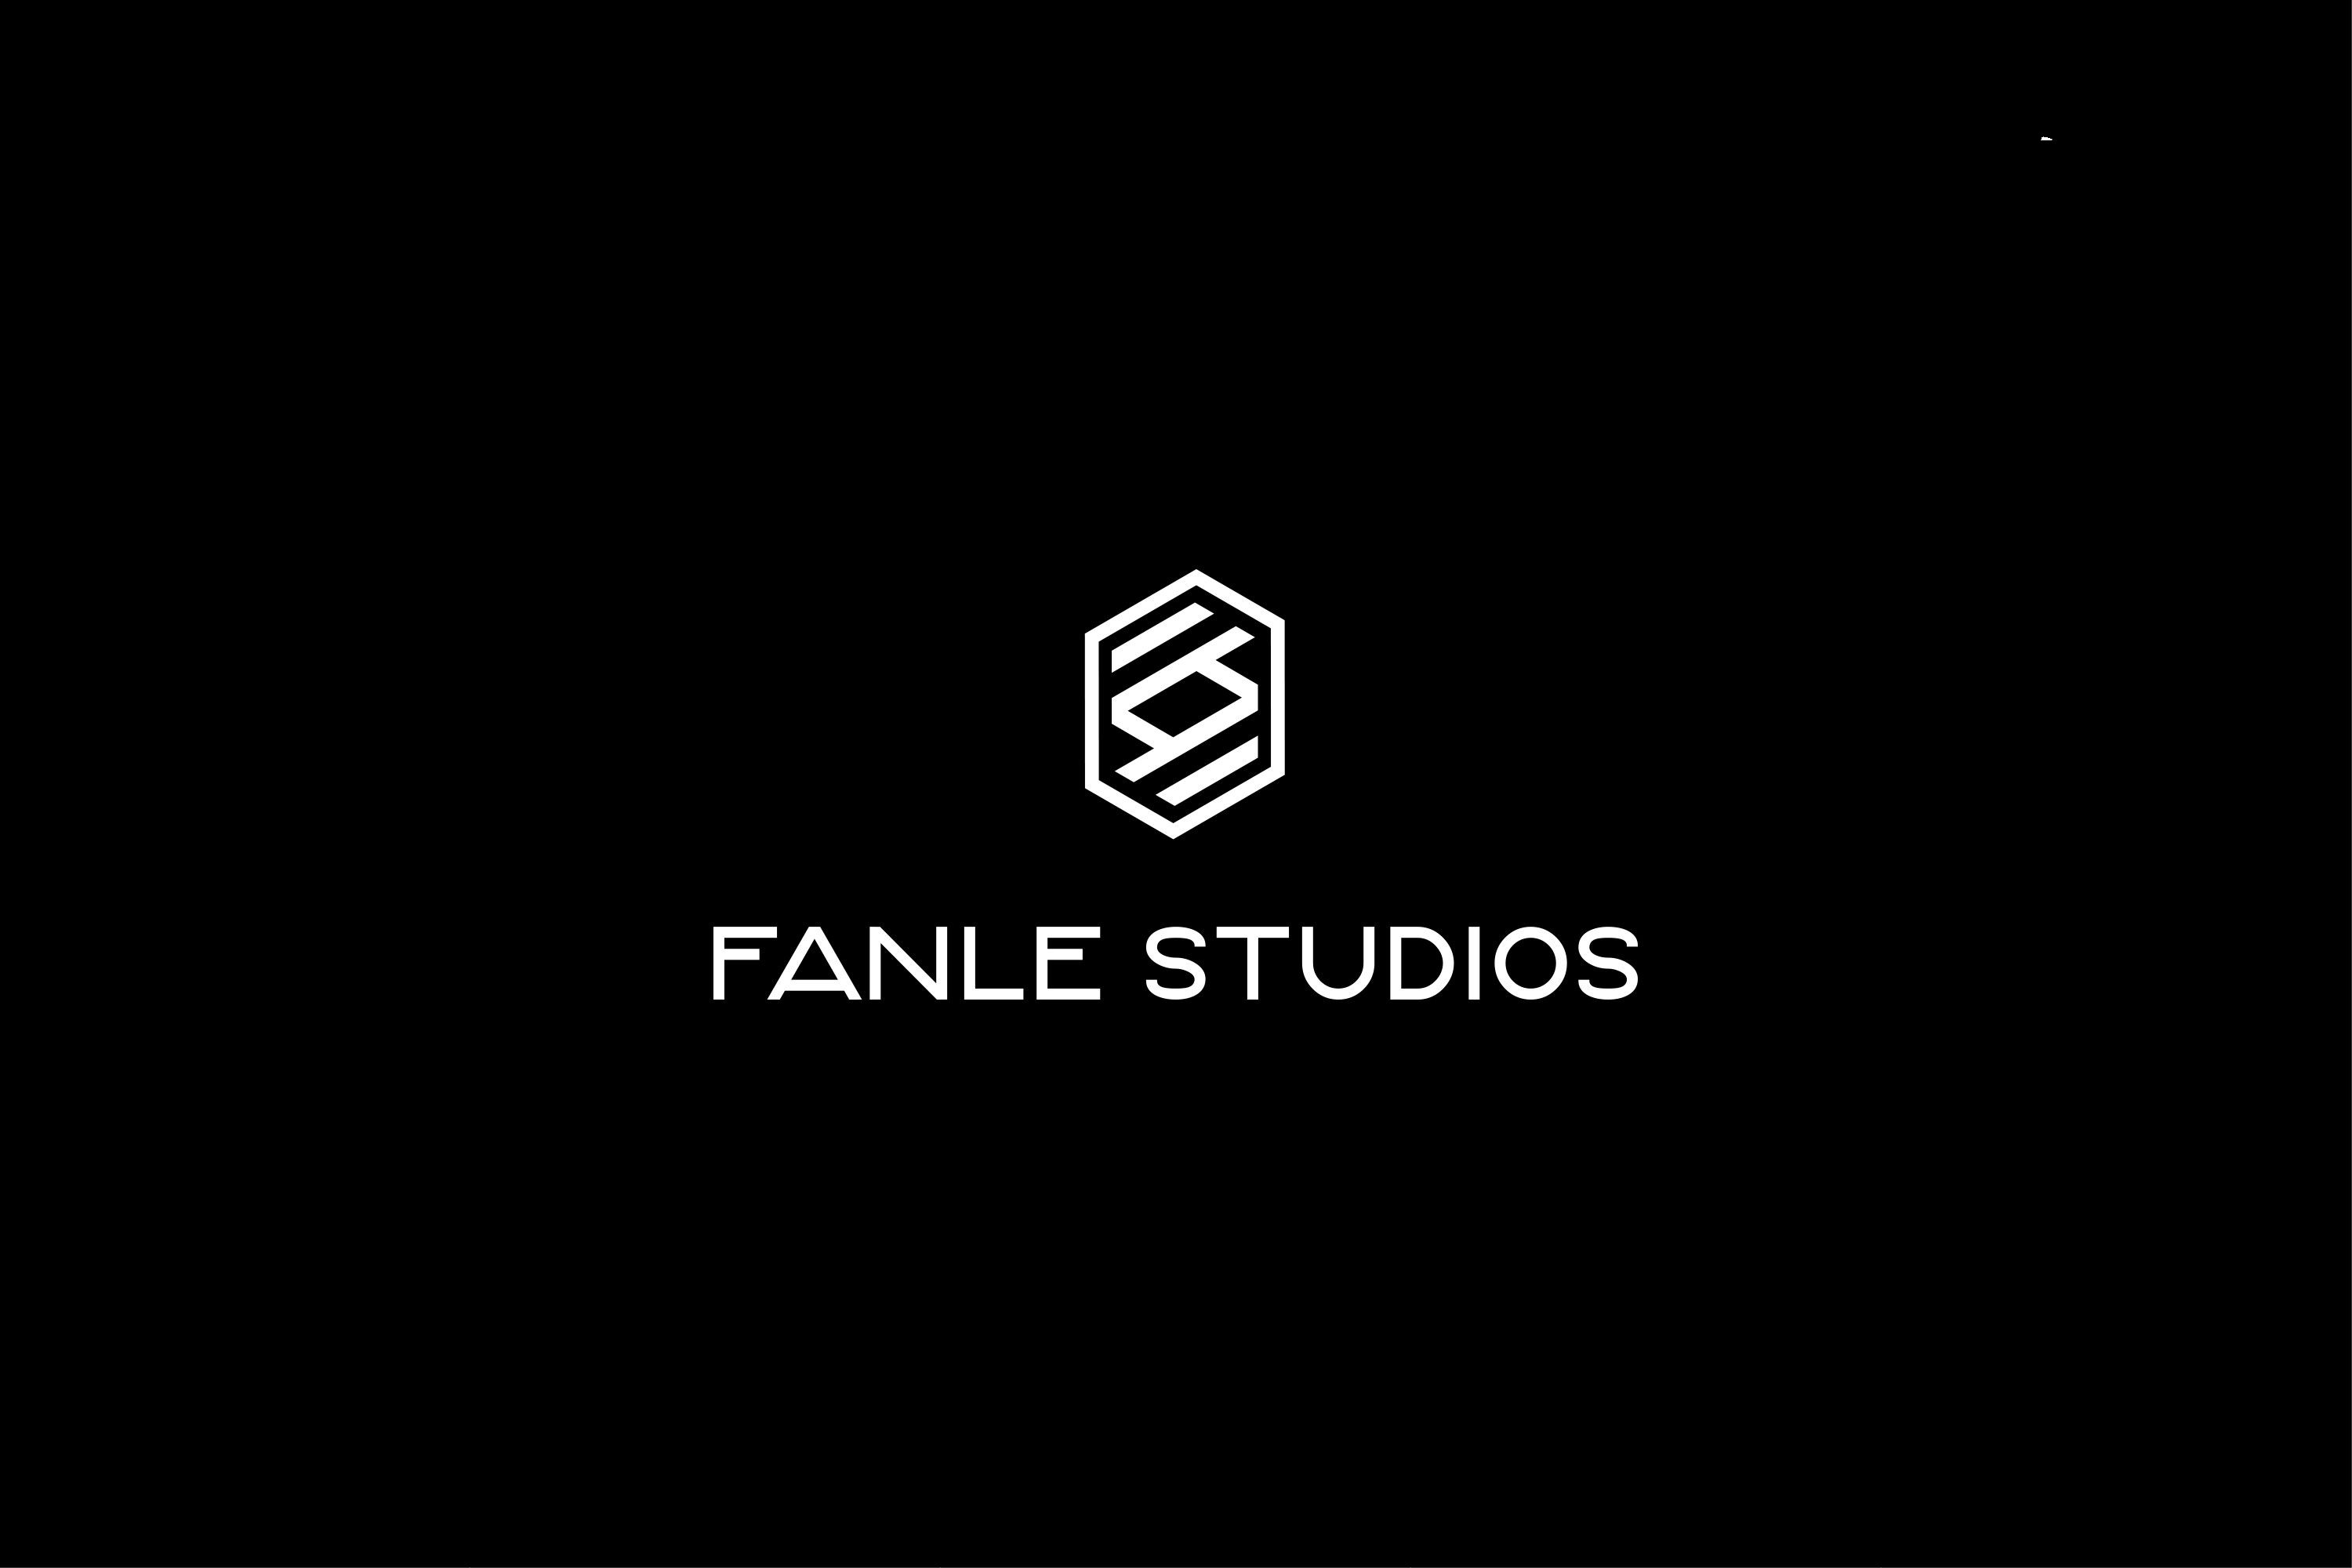 FANLE STUDIOS2